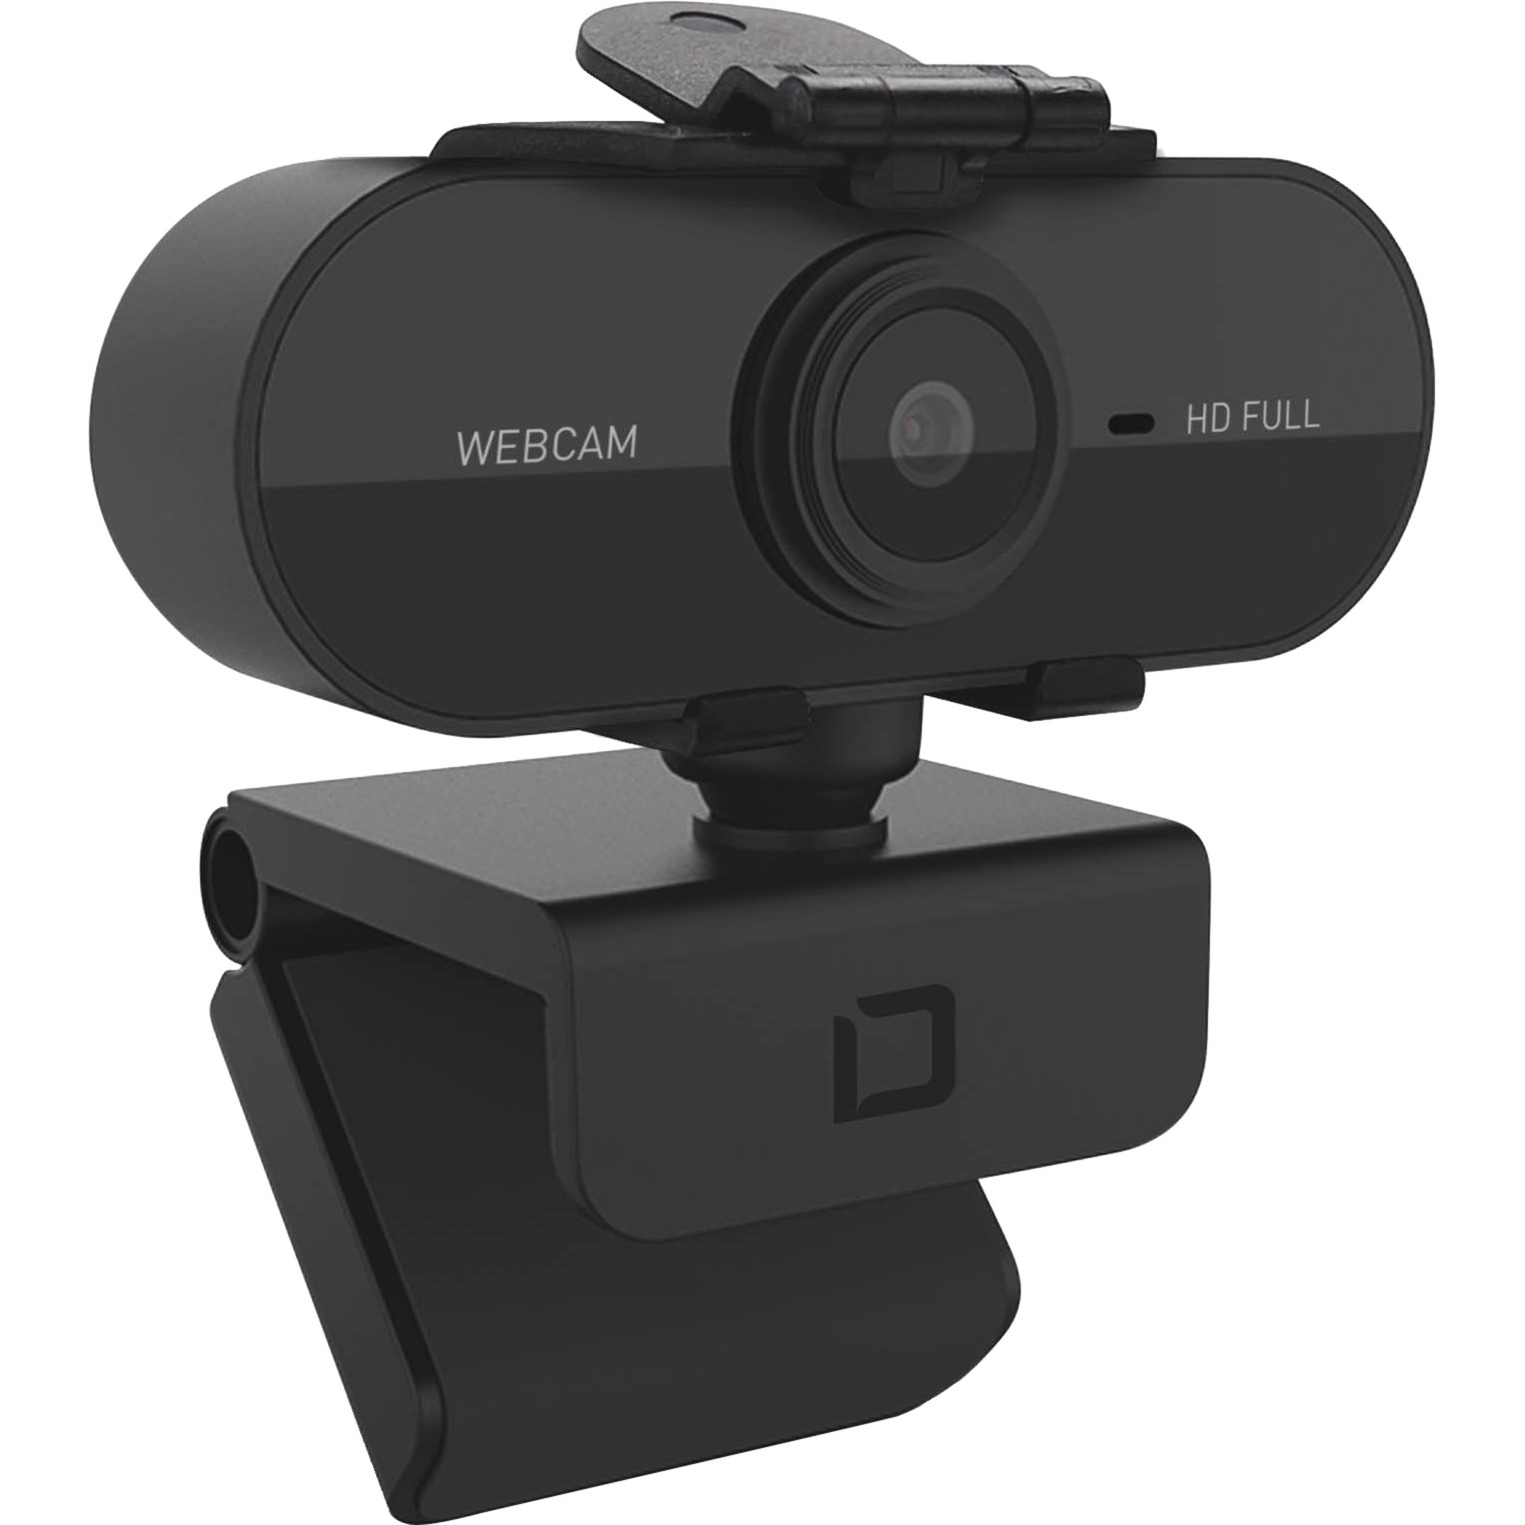 Image of Alternate - Webcam PRO Plus Full HD online einkaufen bei Alternate